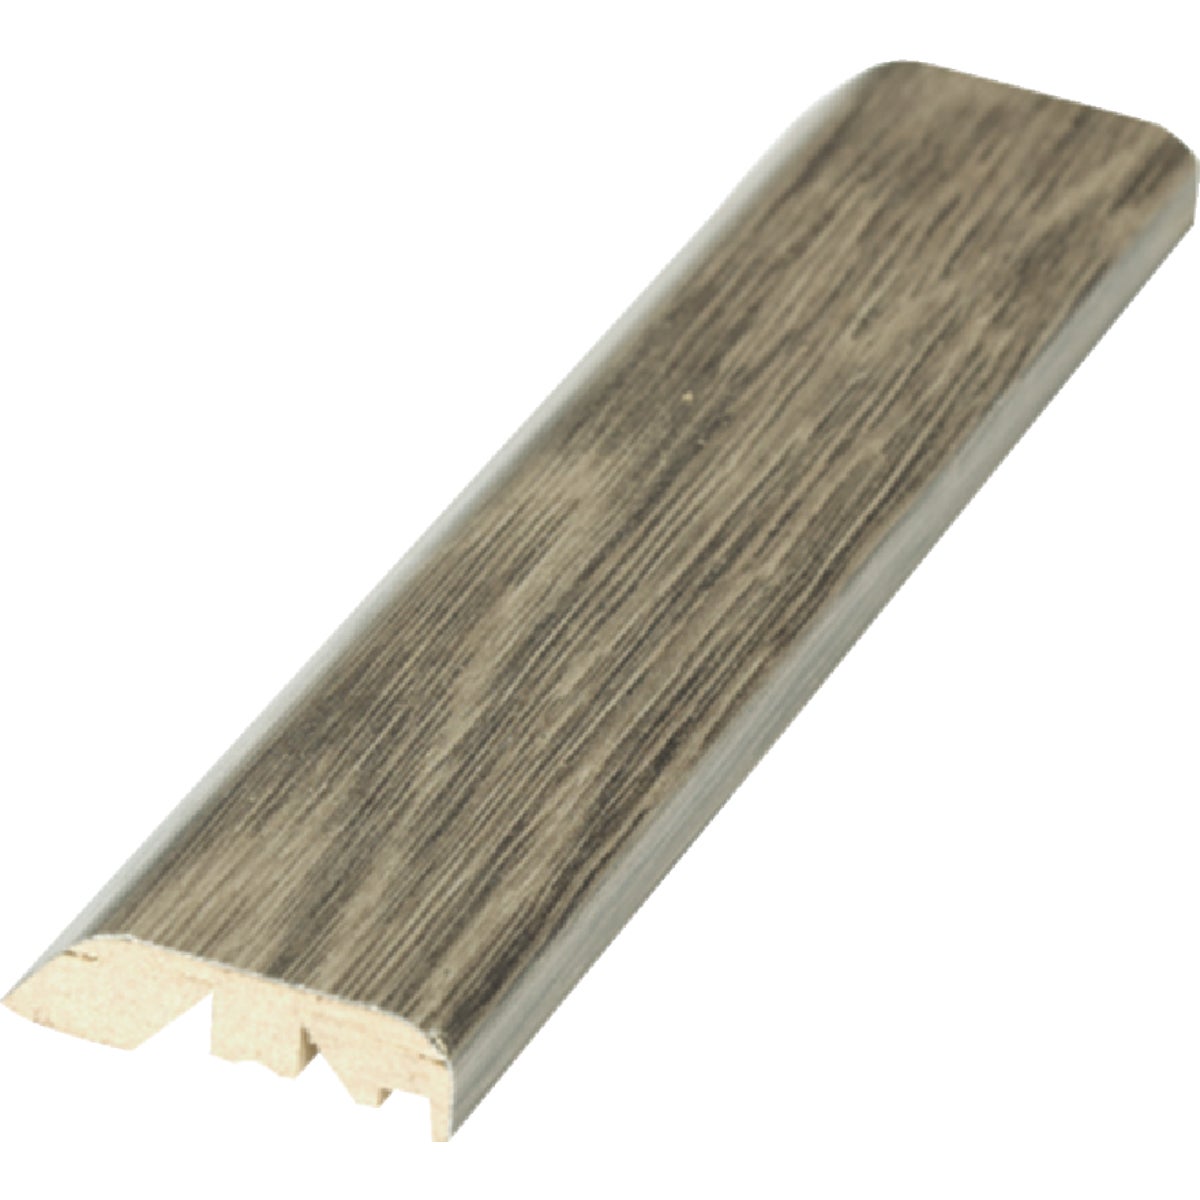 Mohawk Bungalow Oak 1.88 In. W x 84 In. L 5-In-1 Multipurpose Laminate Floor Transition